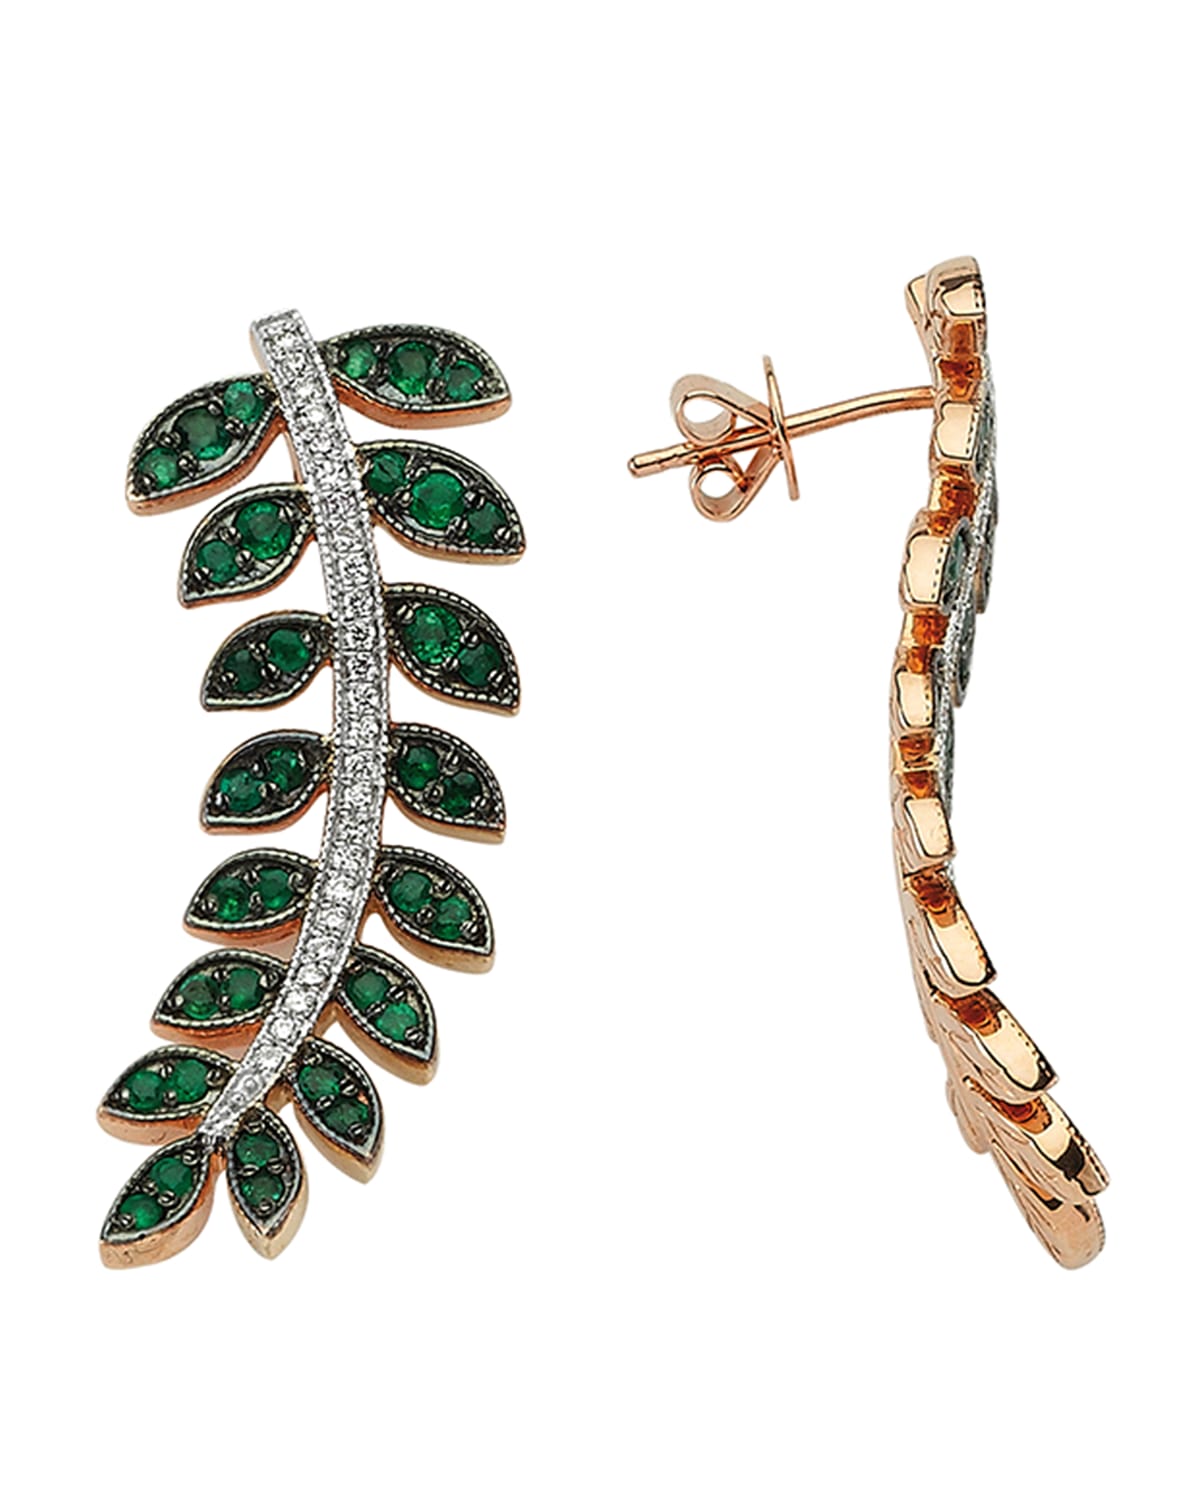 BeeGoddess Feather of Goddess Freya Emerald and Diamond Earrings